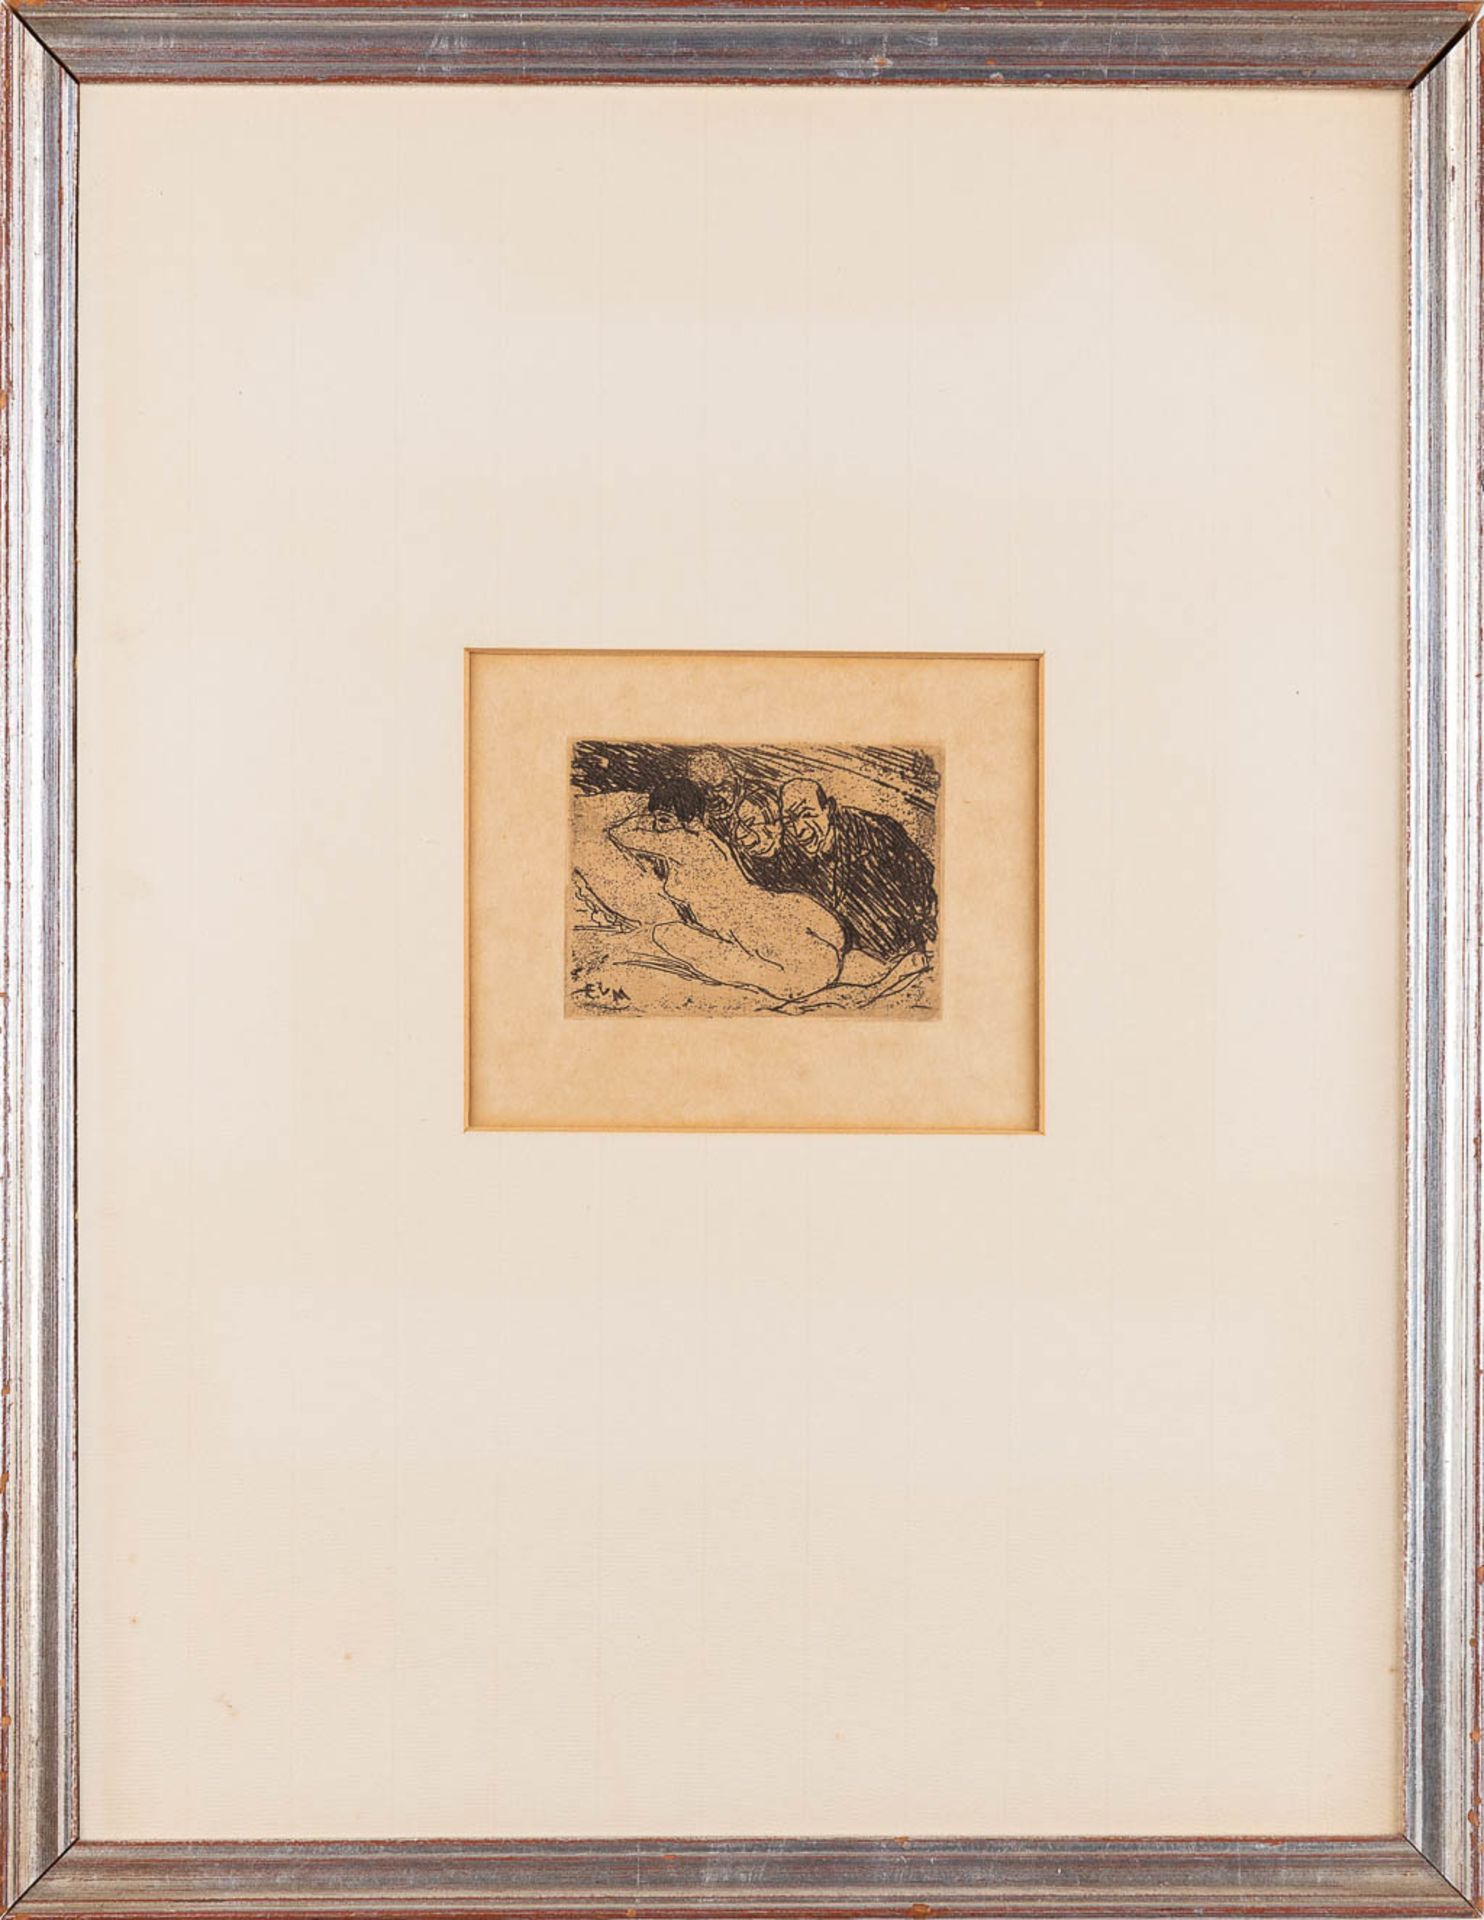 Eugeen VAN MIEGHEM (1875-1930) 'Trois épieurs' an etching, 1922. (W: 9,8 x H: 7,1 cm) - Image 3 of 6